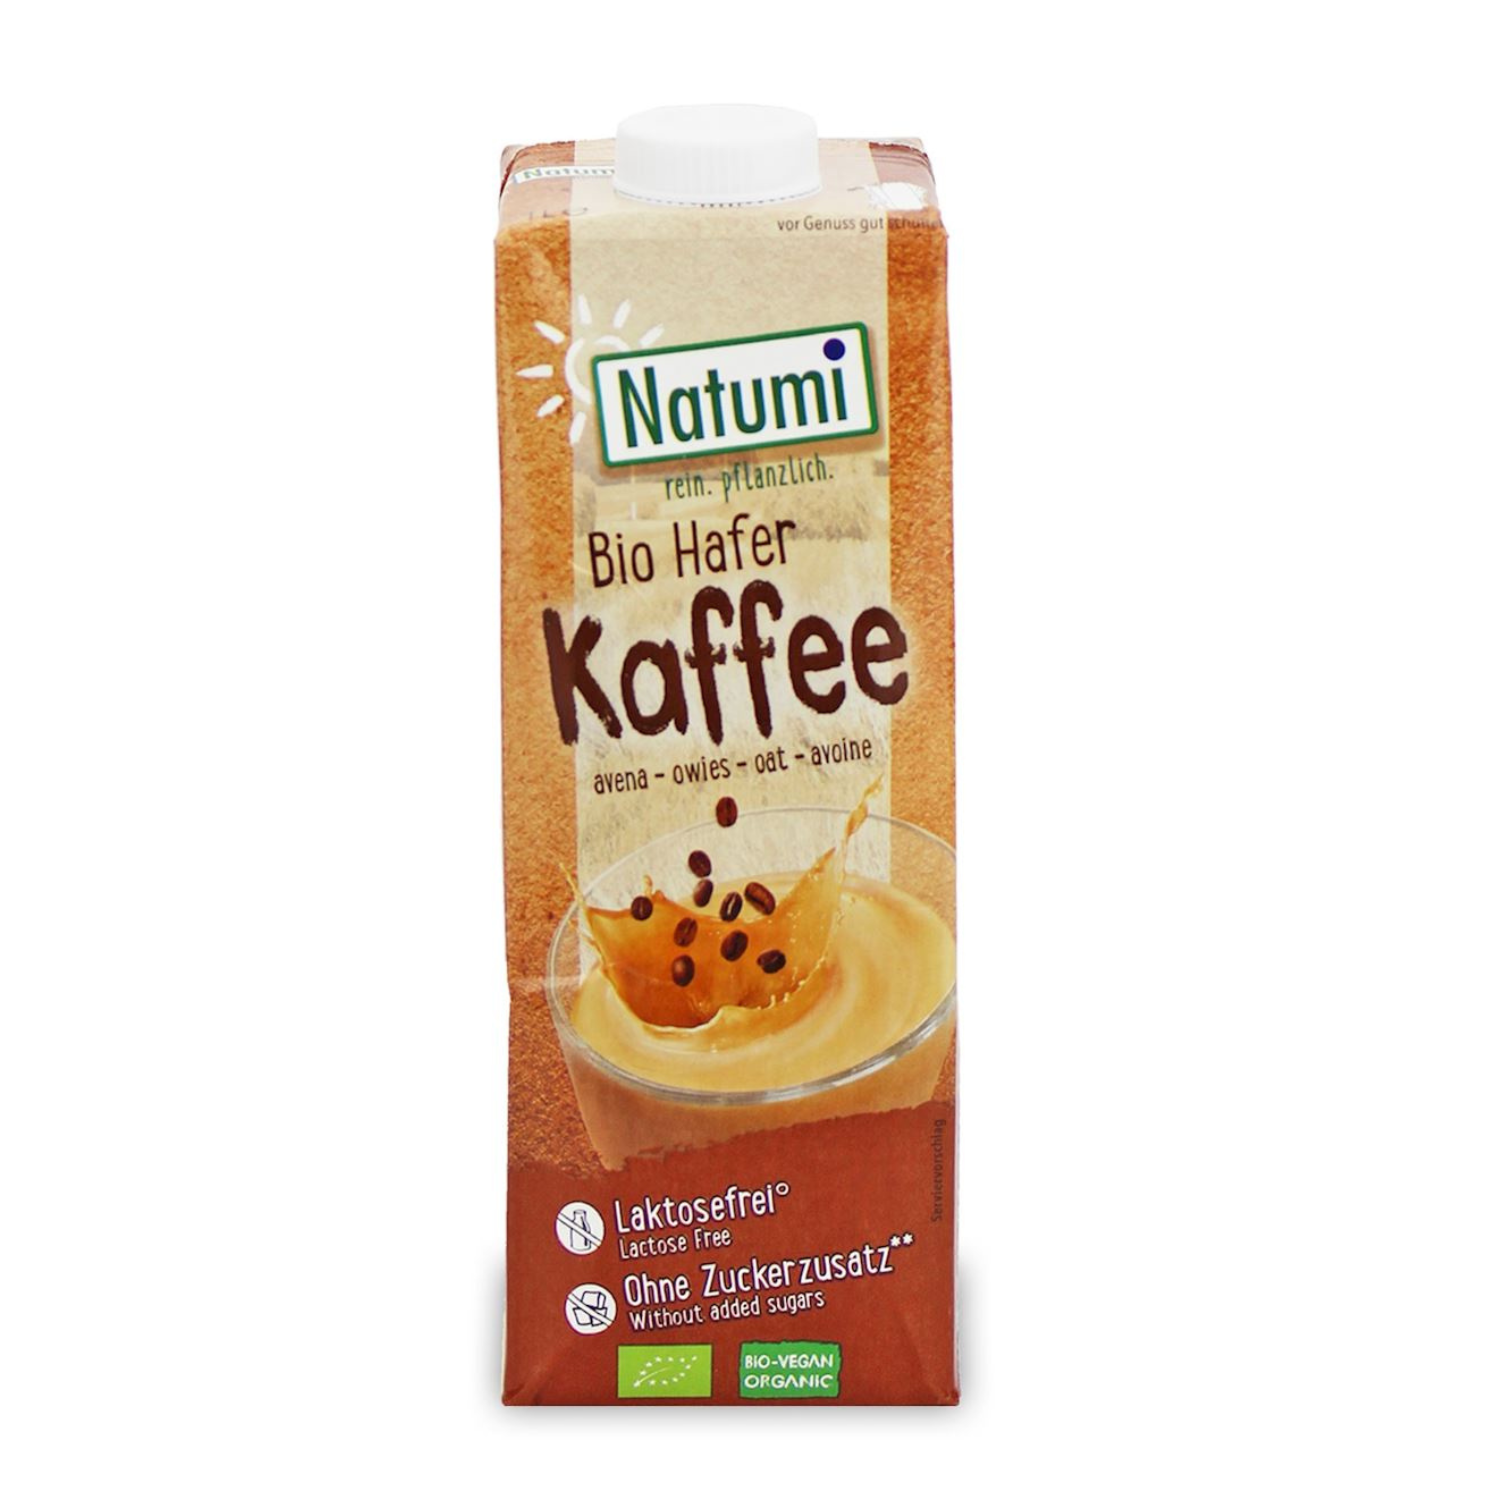 Bautura Bio din ovaz cu cafea, 1L, Natumi